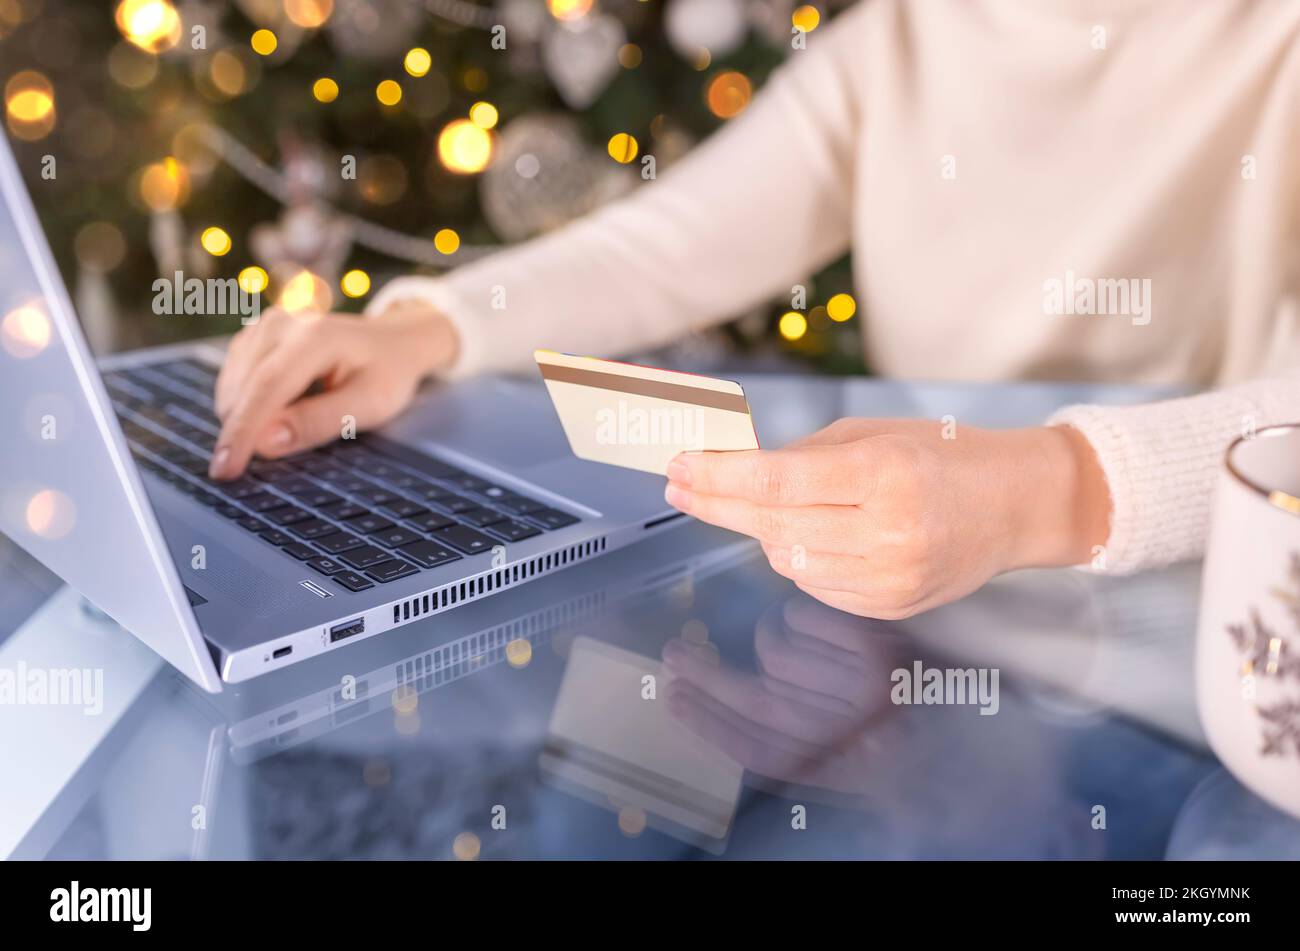 Prise de vue courte des mains de femmes avec carte de crédit dorée et ordinateur portable. Cadeaux de Noël, arbre décoré sur fond. Femme magasiner pour les fêtes p Banque D'Images